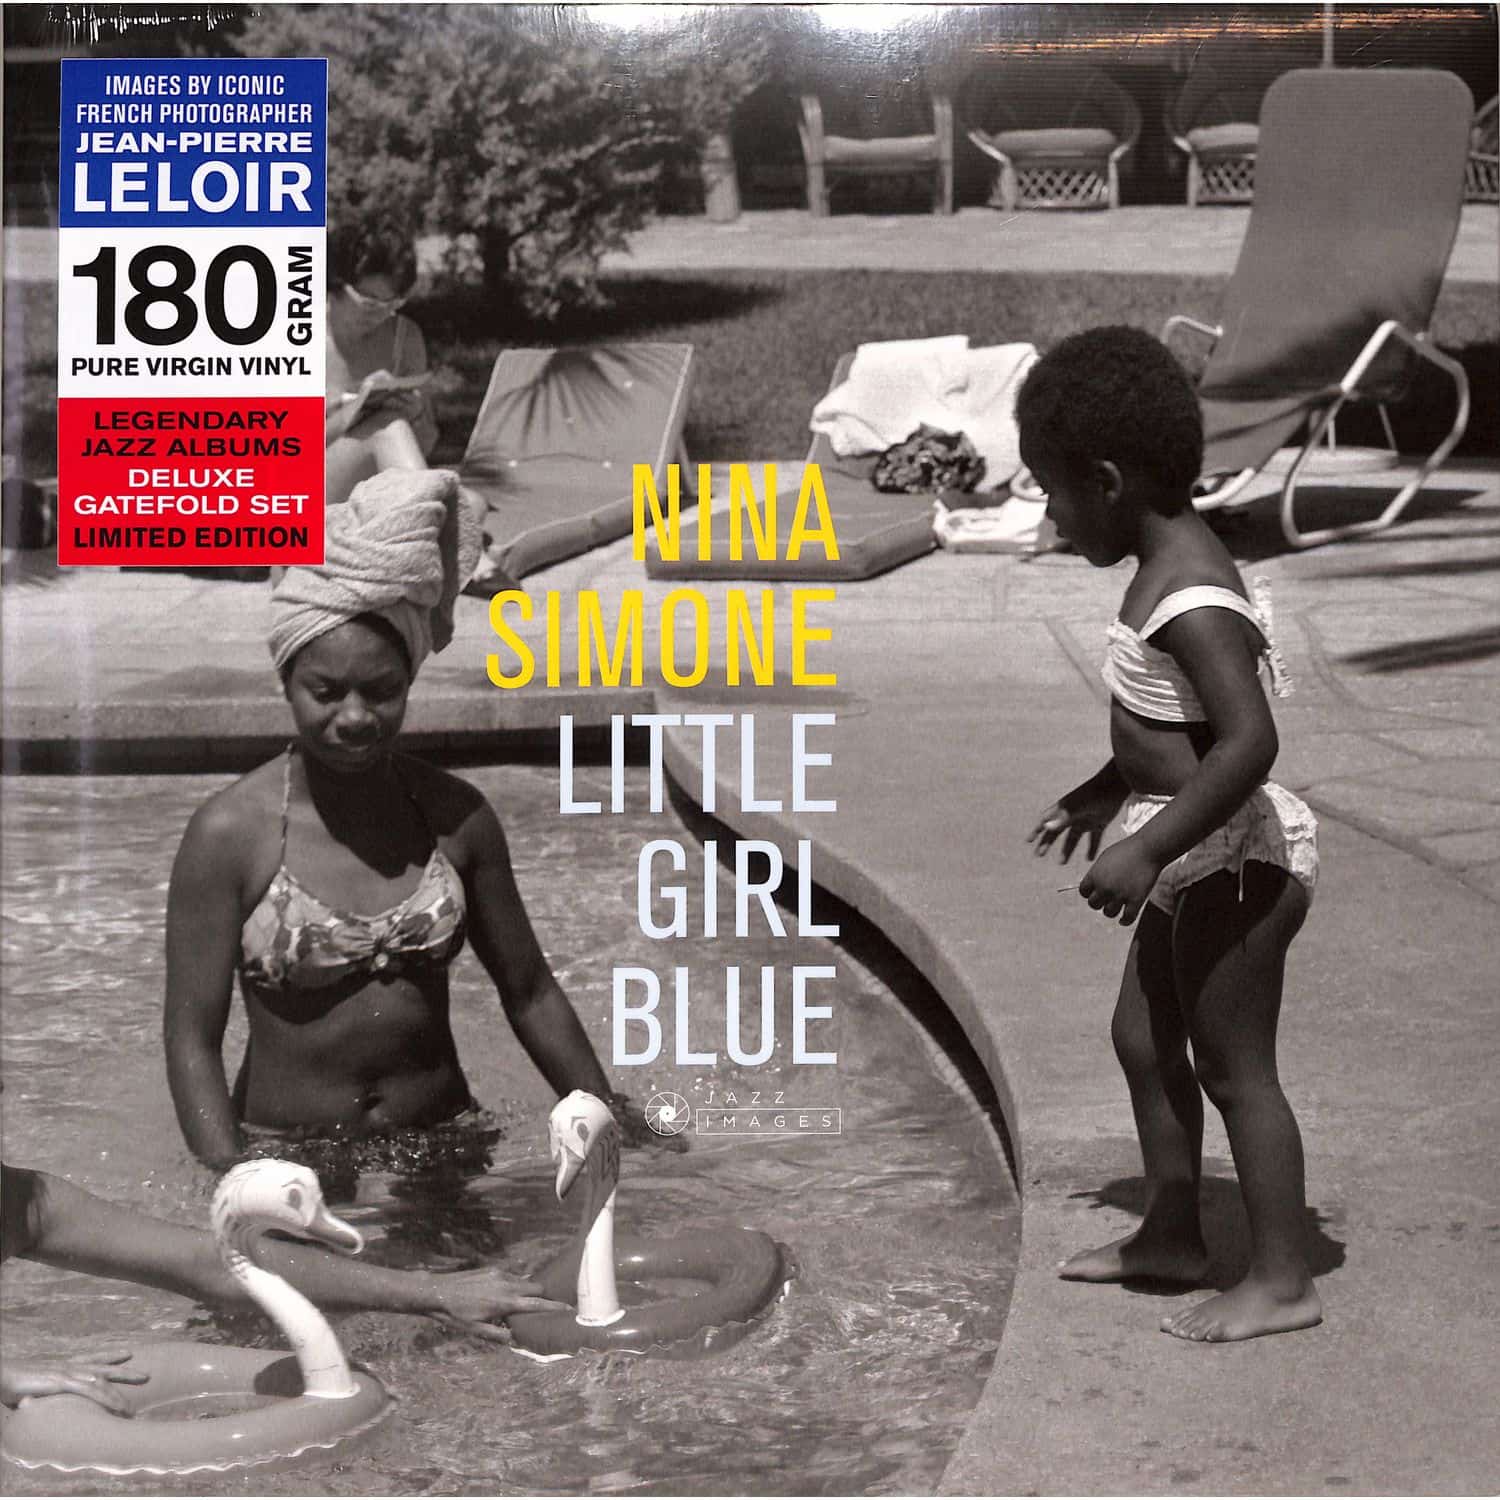 Nina Simone - LITTLE GIRL BLUE